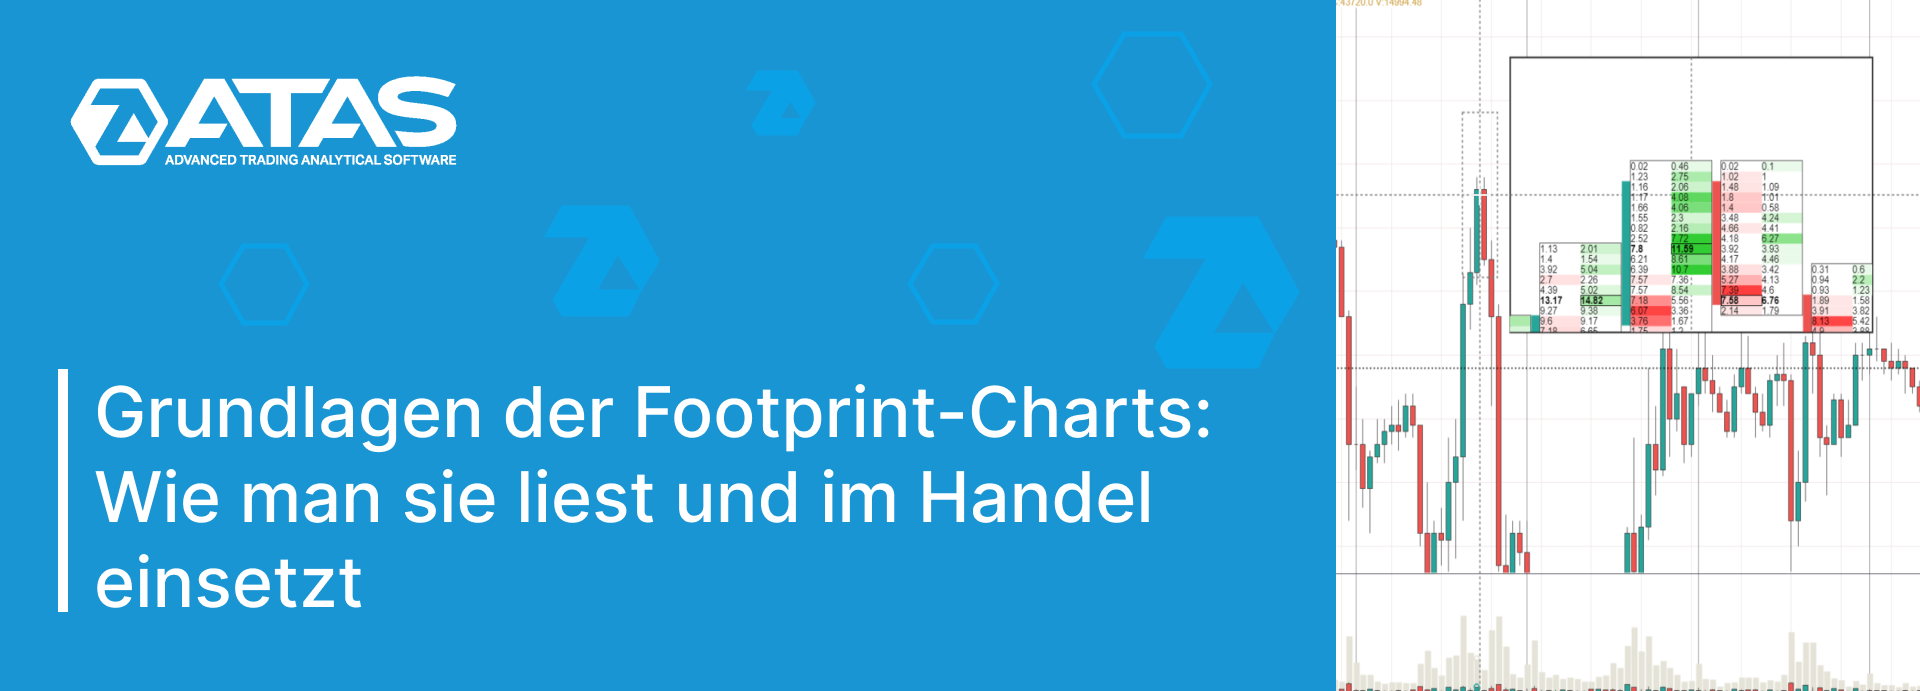 Grundlagen der Footprint-Charts